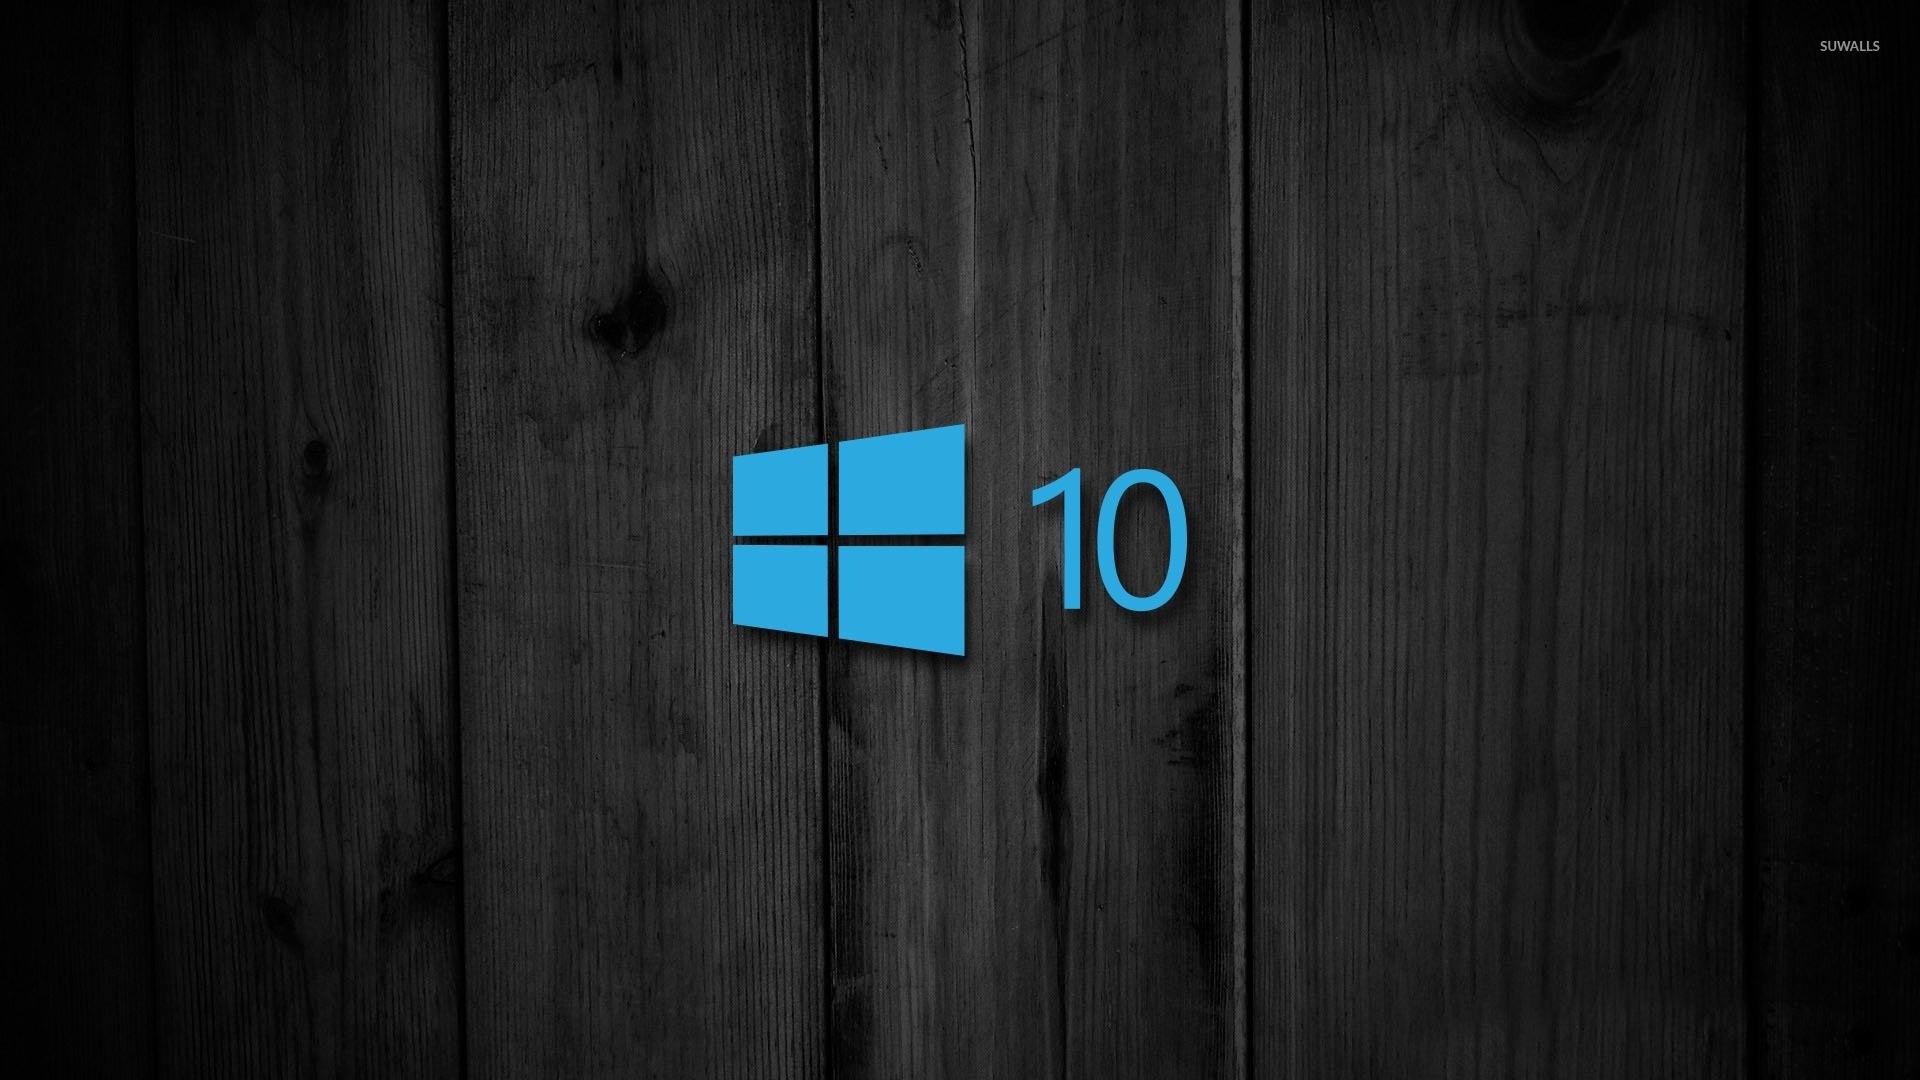 Фоновые изображения для рабочего стола Windows 10